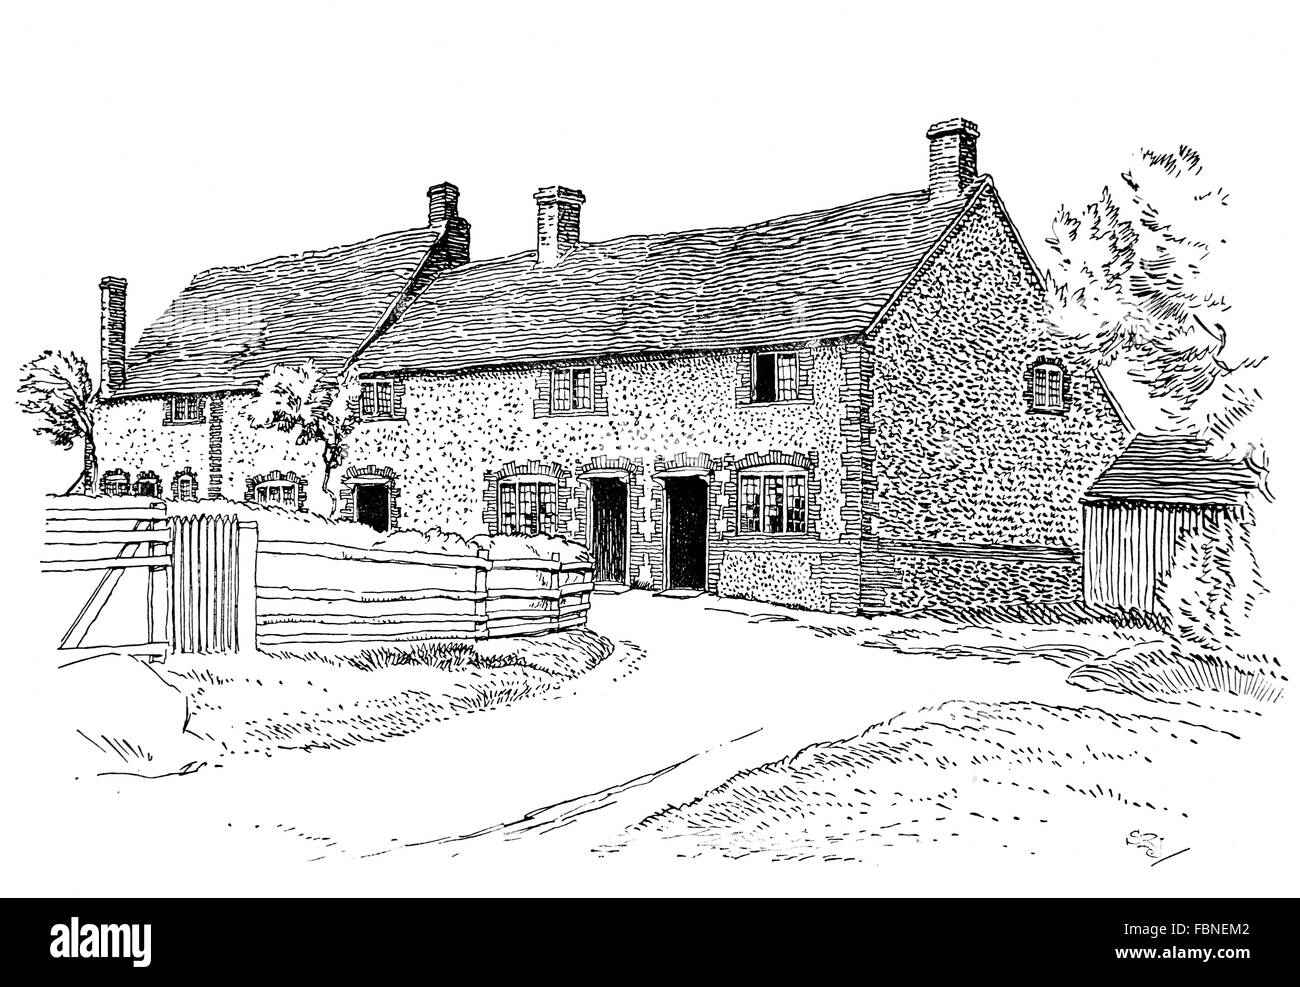 Regno Unito, Inghilterra, Buckinghamshire, Downley, vecchie case rurali, 1911 Illustrazione di linea da, Sydney R Jones, dallo studio della rivista Foto Stock